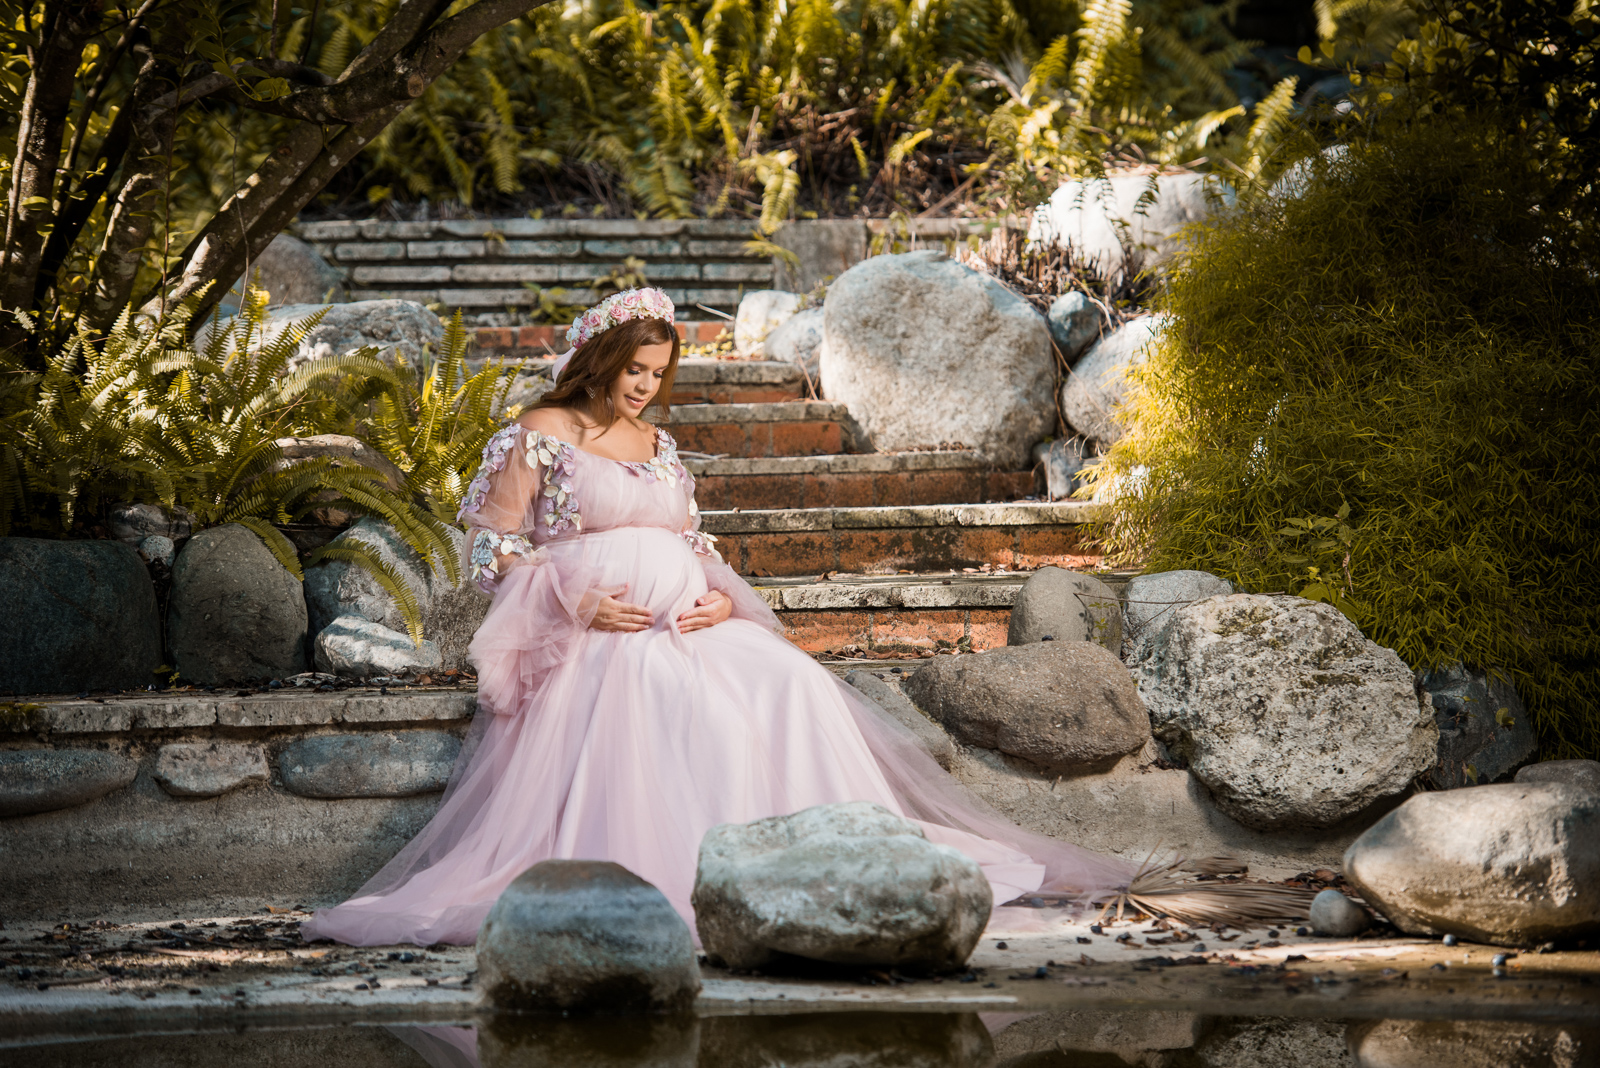 Sesion de fotos de embarazo con vestido en el Jardín Botánico de Santo Domingo, Republica Dominicana por el fotógrafo dominicano